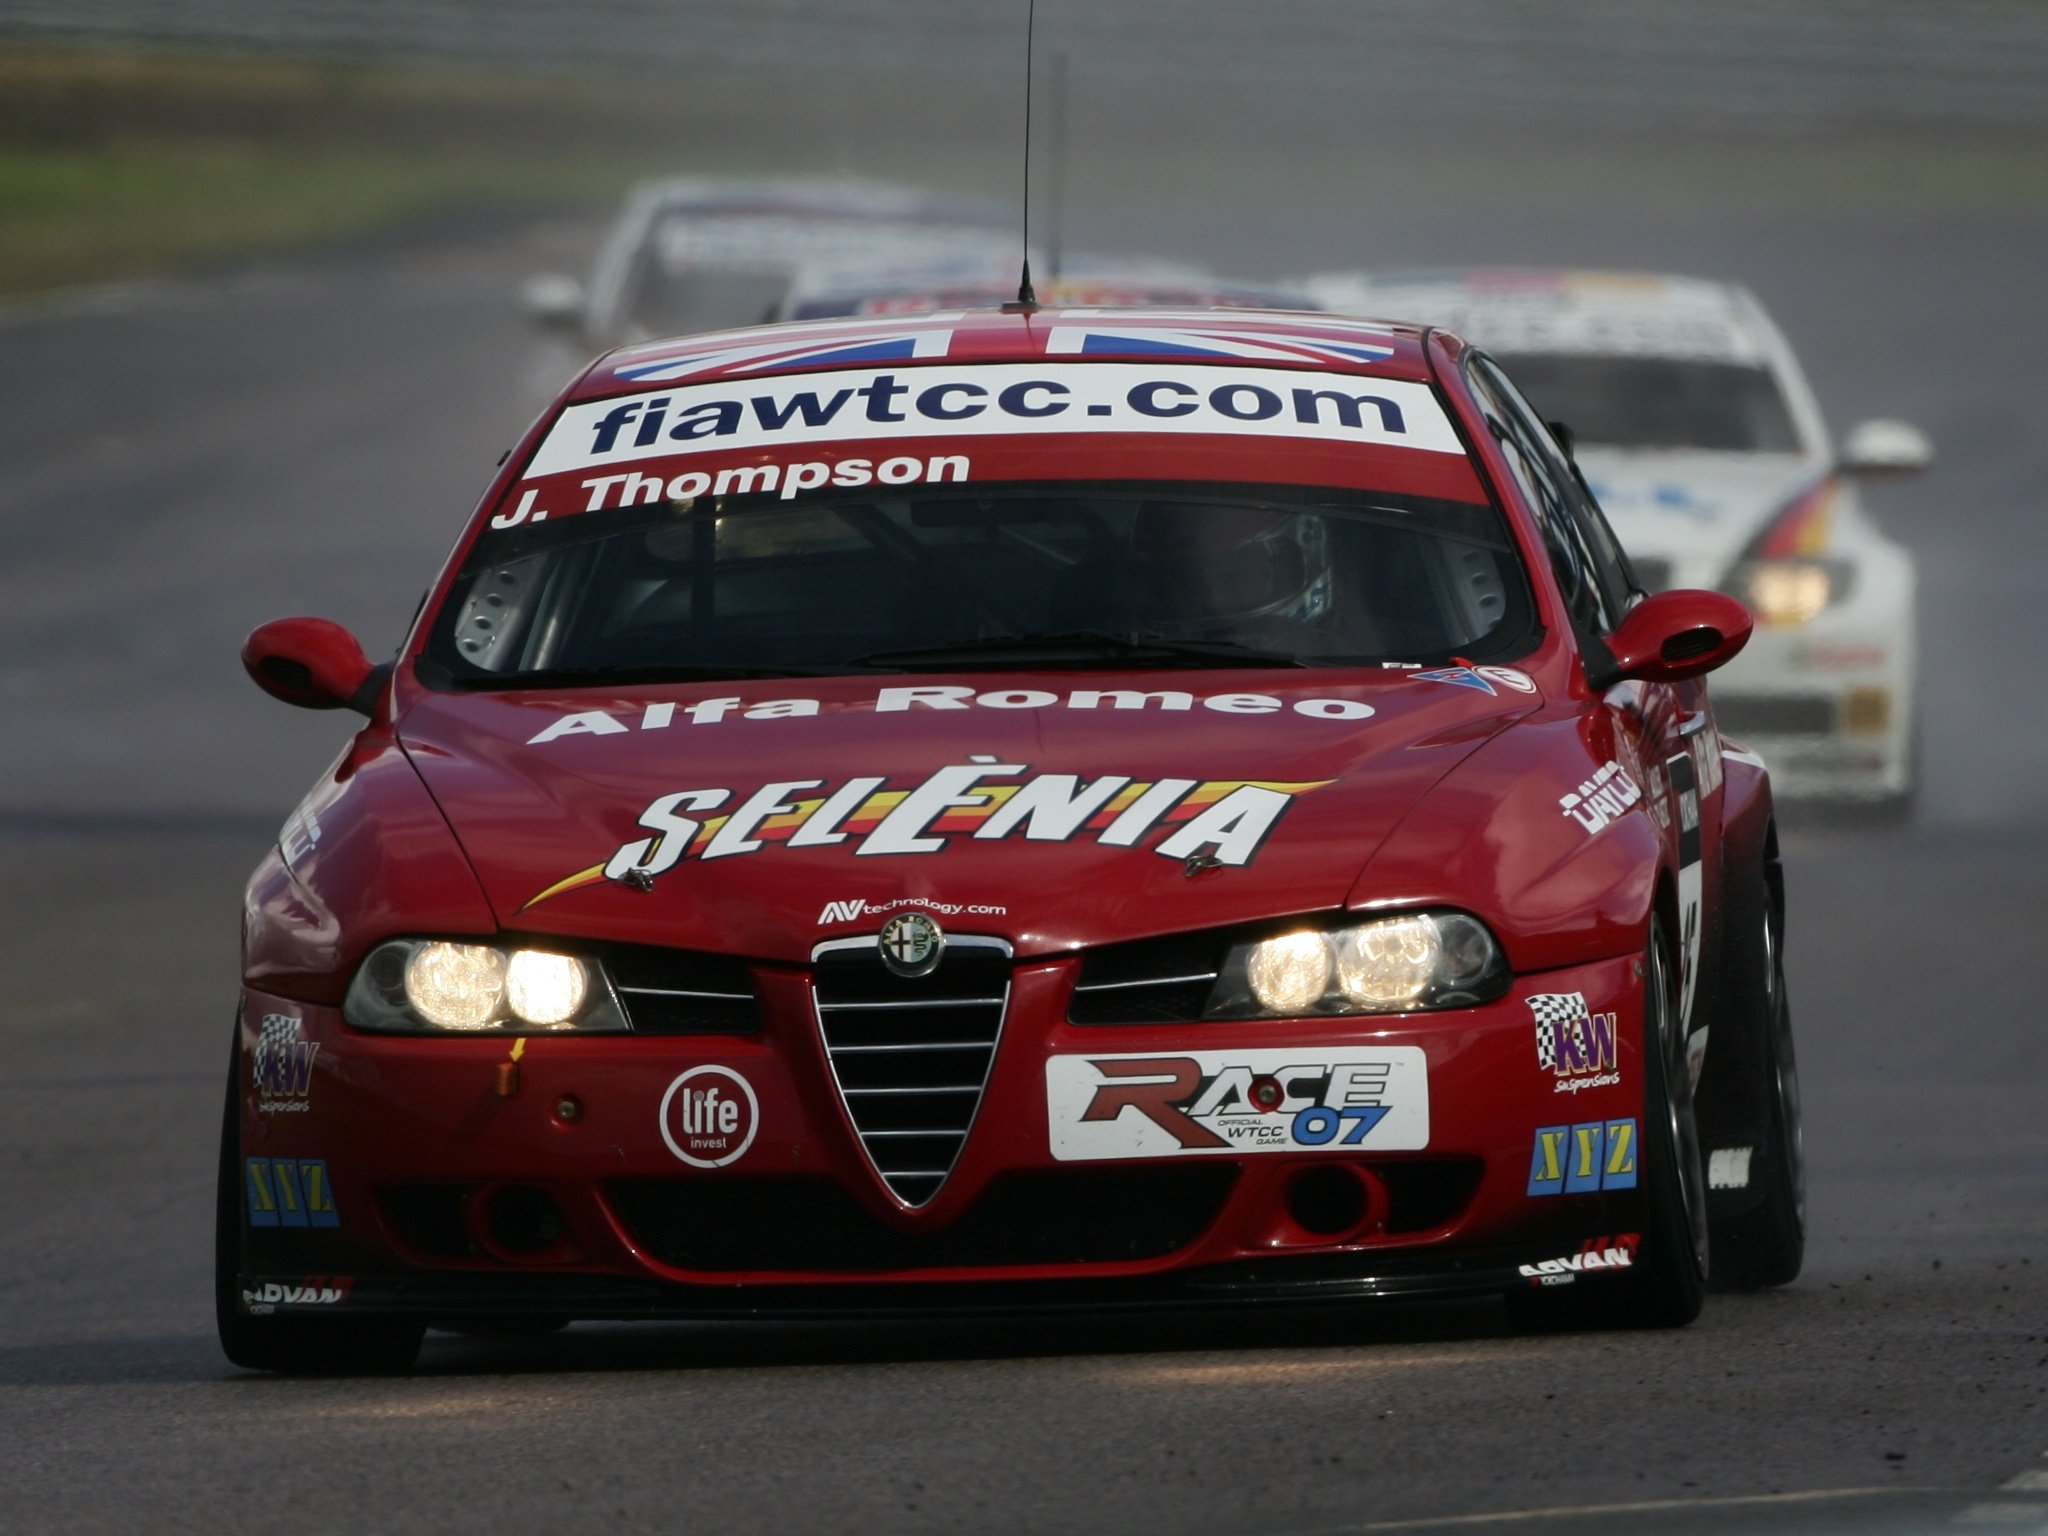 2004 07, Alfa, Romeo, 156, Super, 2000,  se107 , Wtcc, Race, Racing Wallpaper